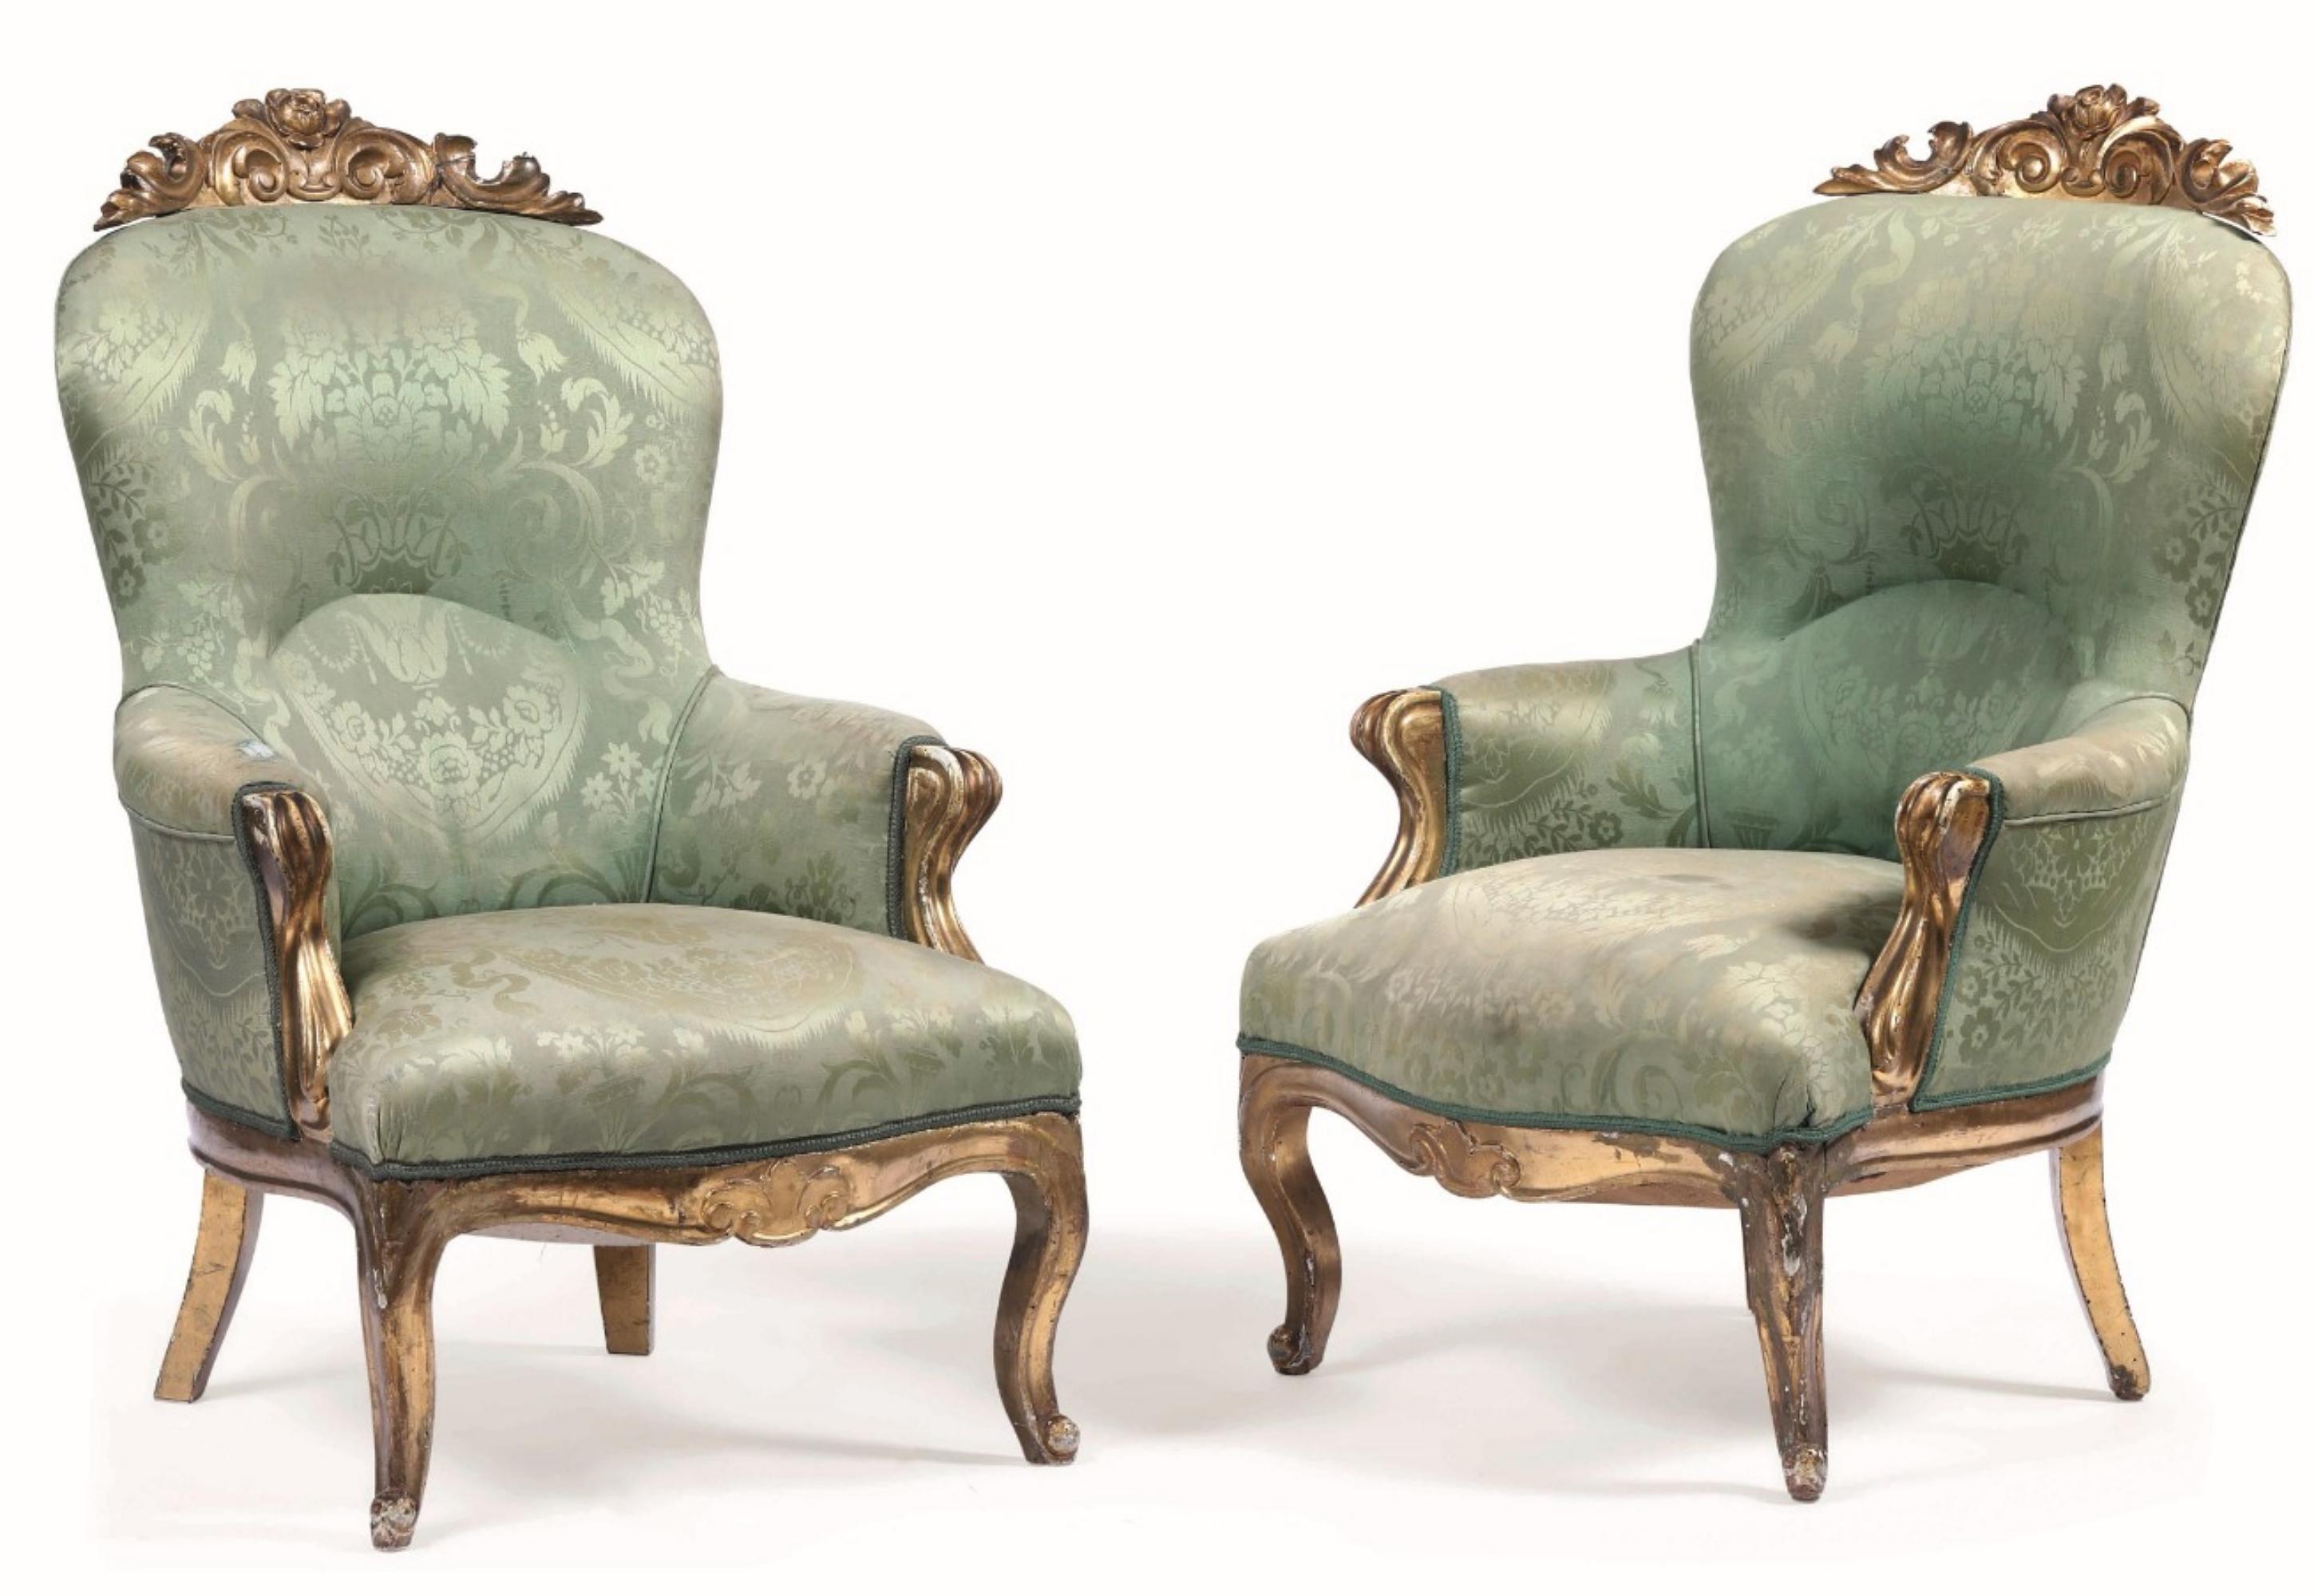 Paire de fauteuils en bois sculpté et doré.
19ème siècle
Recouvert d'un tissu damassé vert,
Mesures : L. 70 - D. 70 - H. 100 Cm
Bonnes conditions.